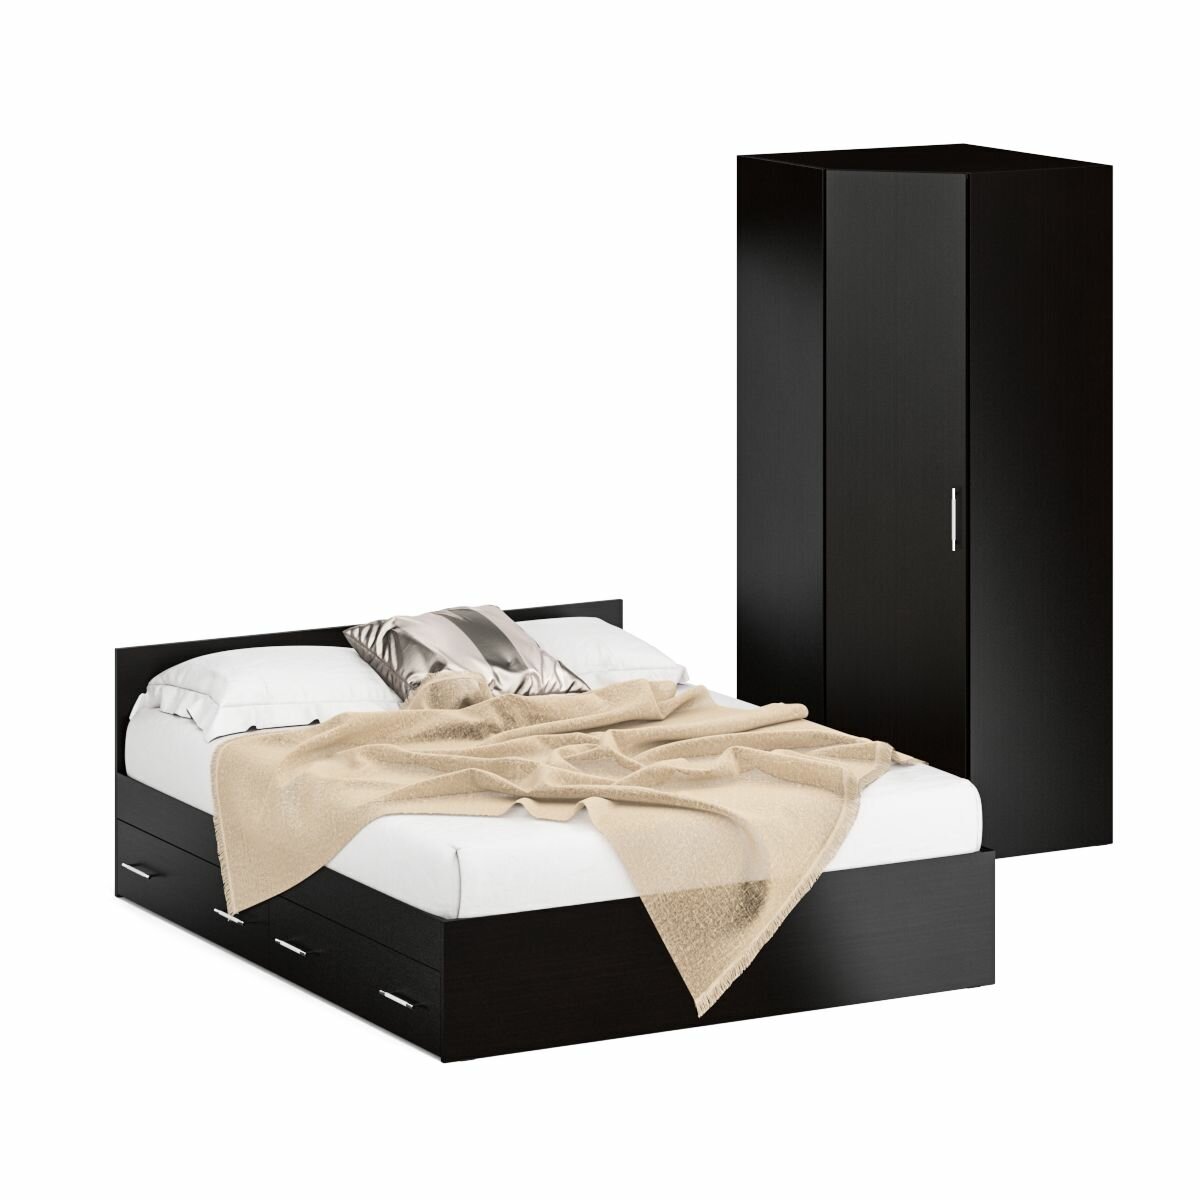 Кровать двуспальная с ящиками 1600 с угловым шкафом Стандарт, цвет венге, спальное место 1600х2000 мм, без матраса, основание есть